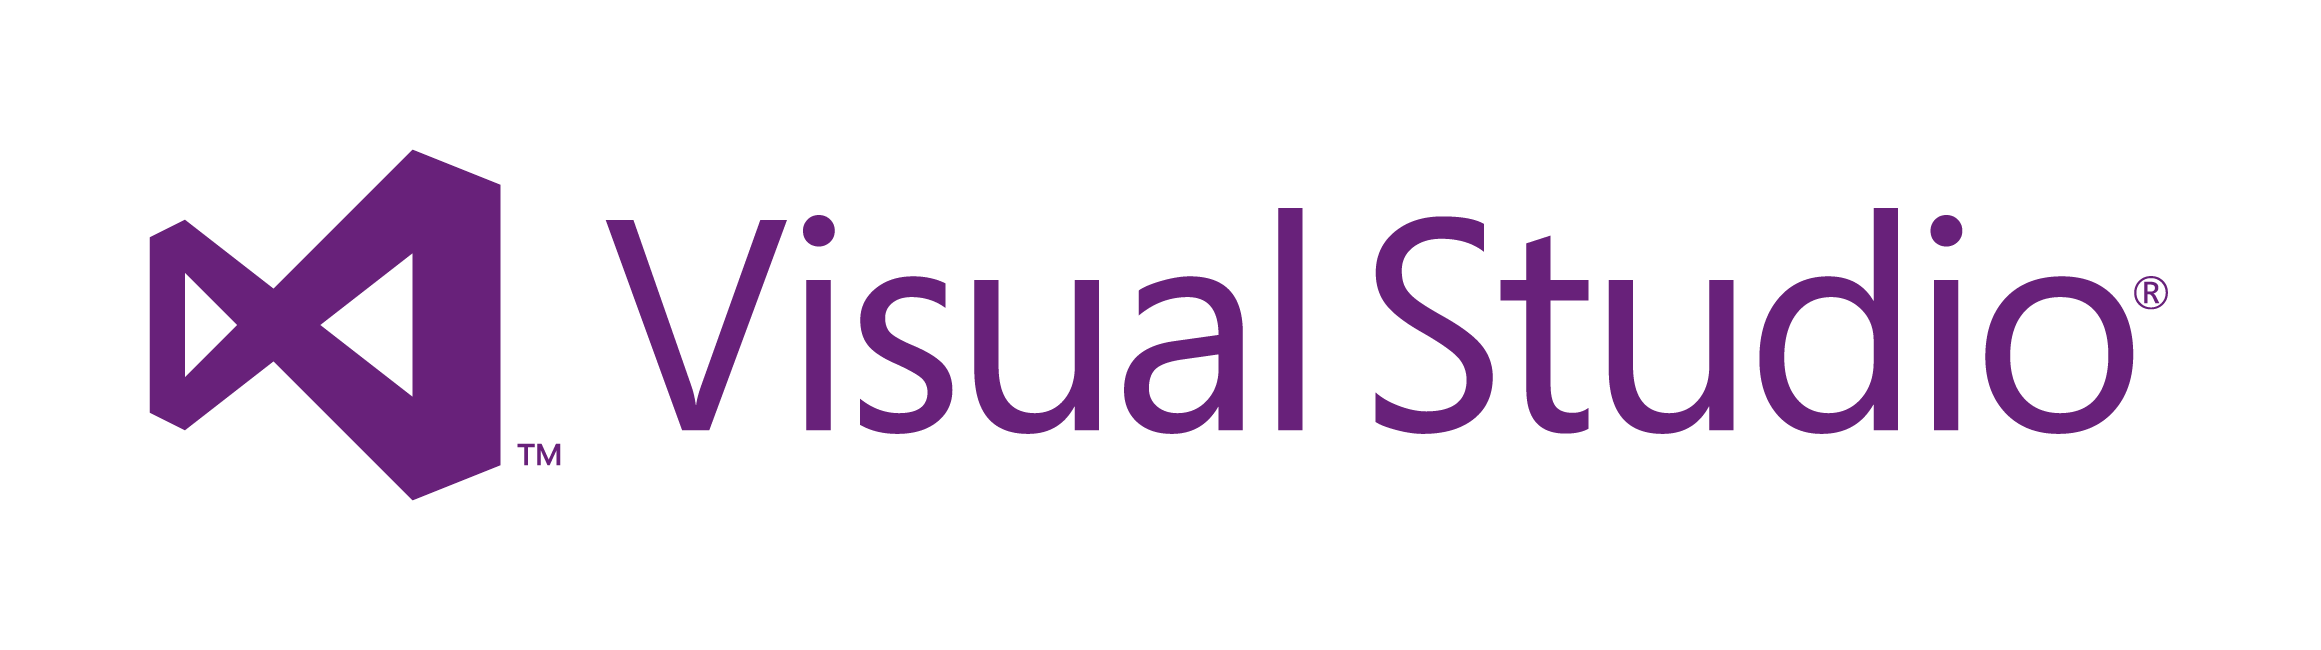 visual-studio-2012-logo.png